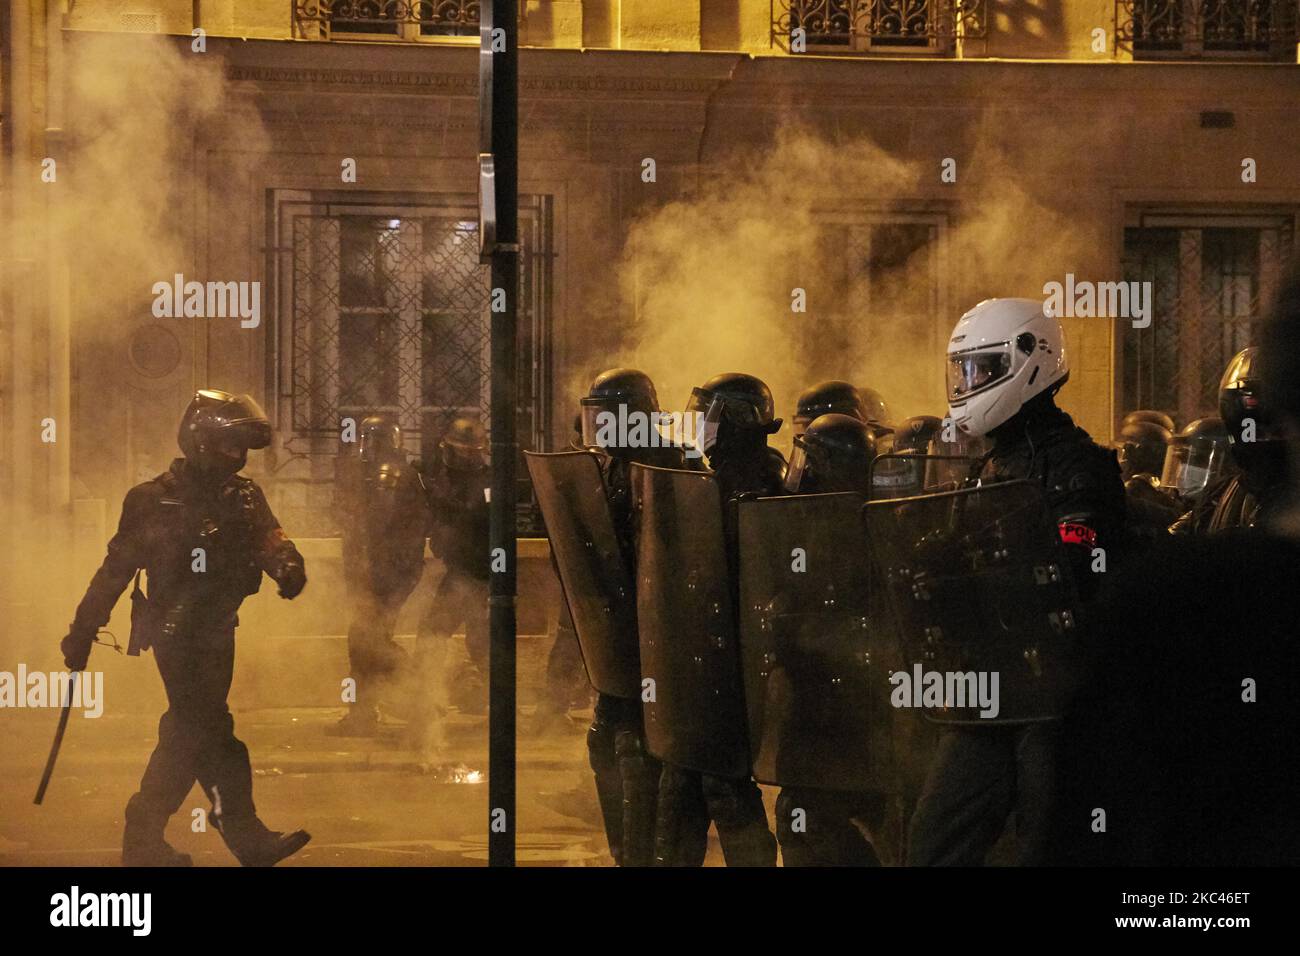 Les gens prennent part à une manifestation contre le projet de loi sur la sécurité mondiale du gouvernement français, qui a pris un tournant violent devant l'Assemblée nationale sur 17 novembre 2020 à Paris, en France. (Photo par Adnan Farzat/NurPhoto) Banque D'Images